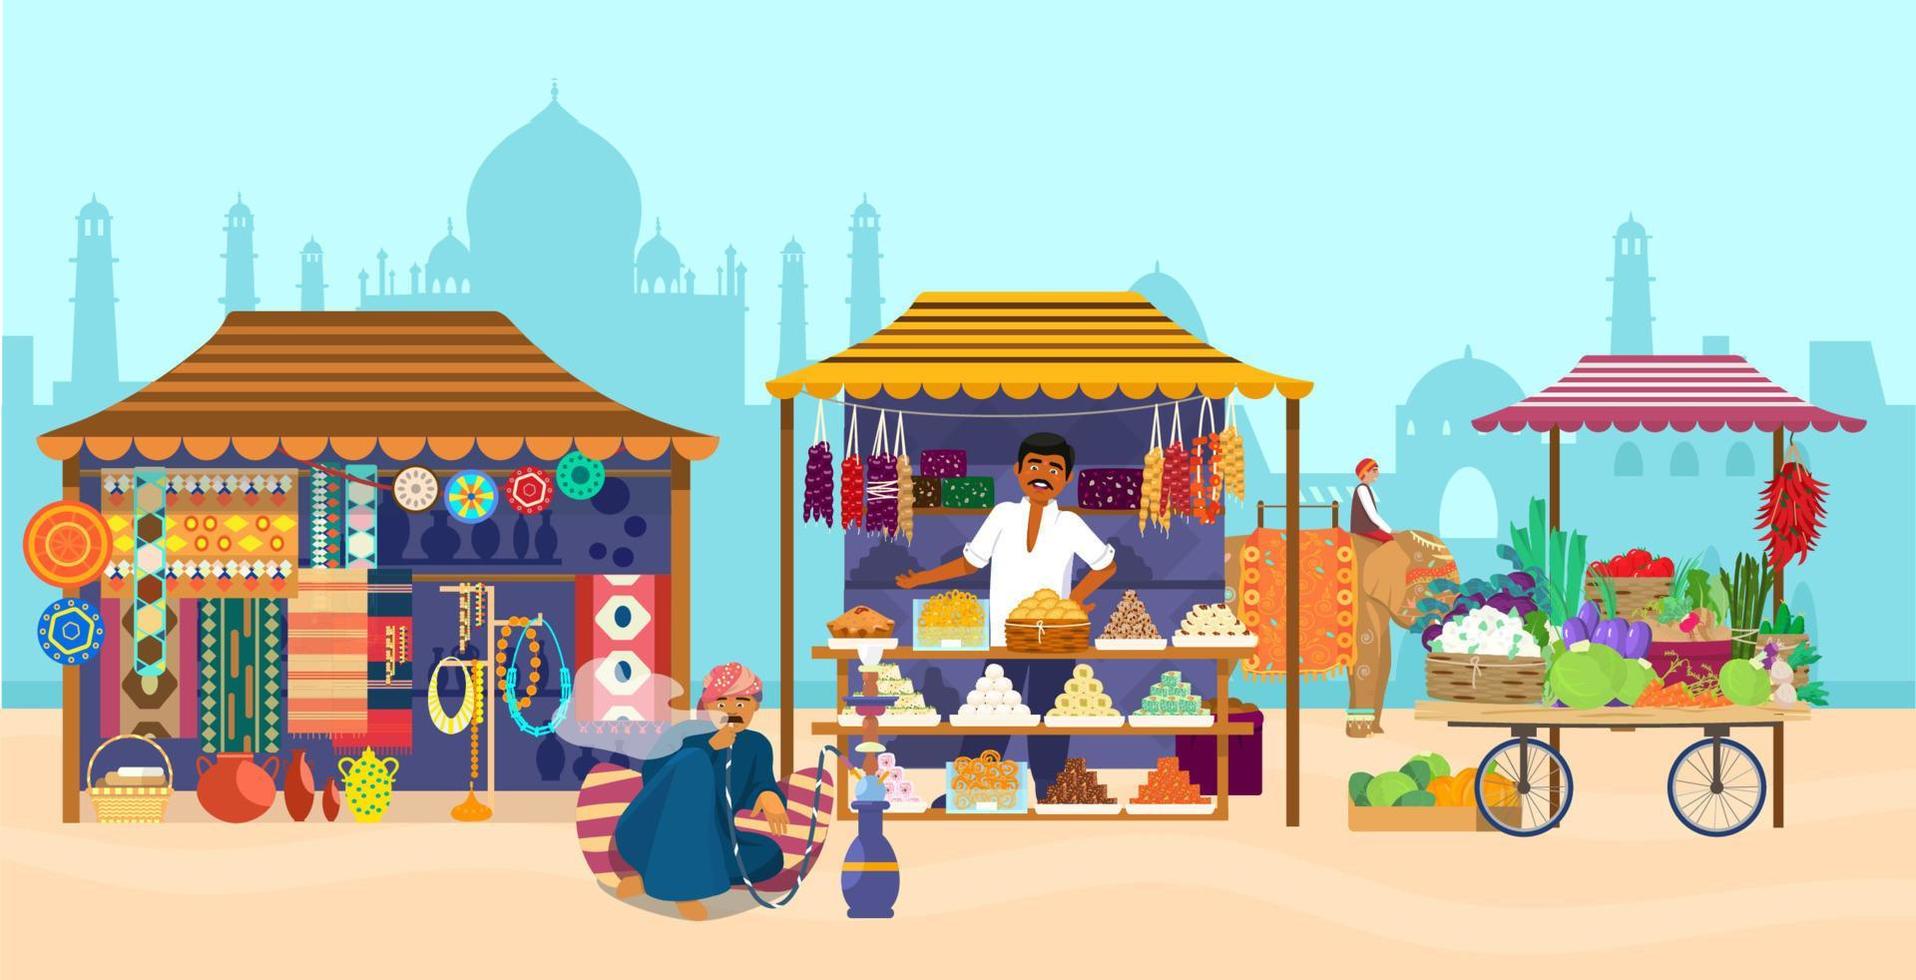 vektorillustration des asiatischen marktes mit verschiedenen geschäften und menschen. Elefantenreiter, Taj Mahal Silhouette, Souvenirladen, Süßwarenladen, Töpferei, Teppiche, Stoffe, Gemüse, Mann, der Wasserpfeife raucht. vektor